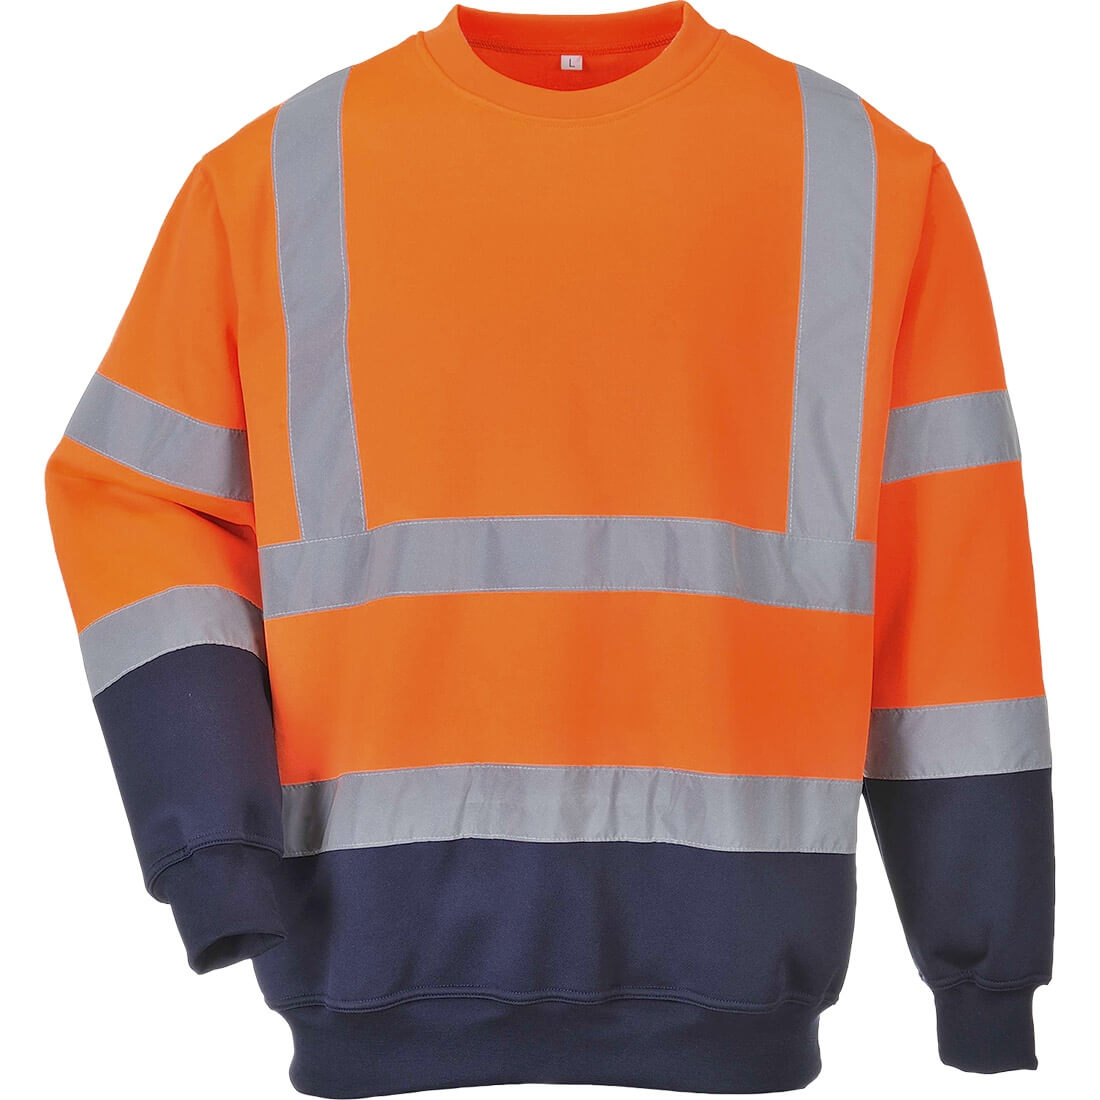 Sweatshirt bicolore HiVis - Les vêtements de protection